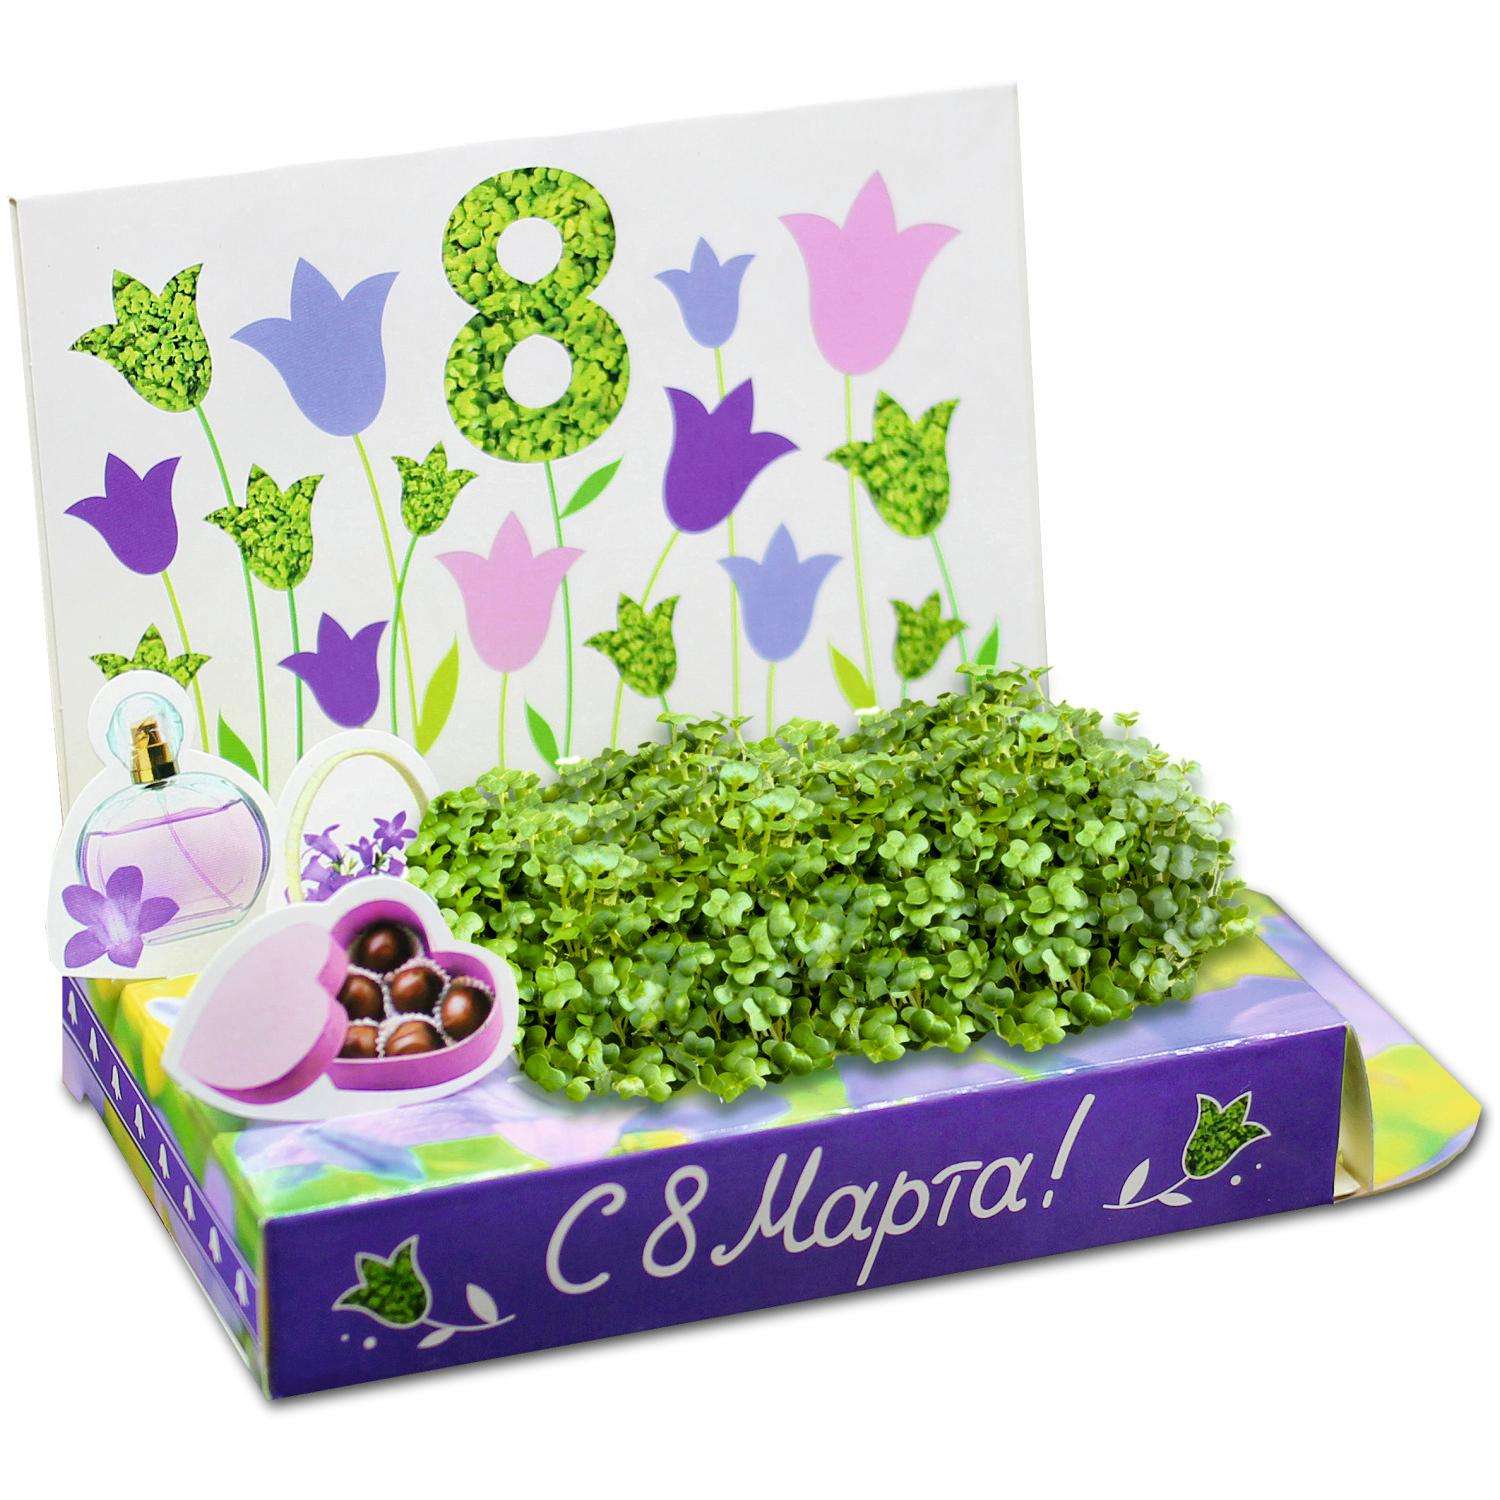 Набор для выращивания Happy Plant Вырасти сам микрозелень Живая открытка С 8 Марта! - фото 1